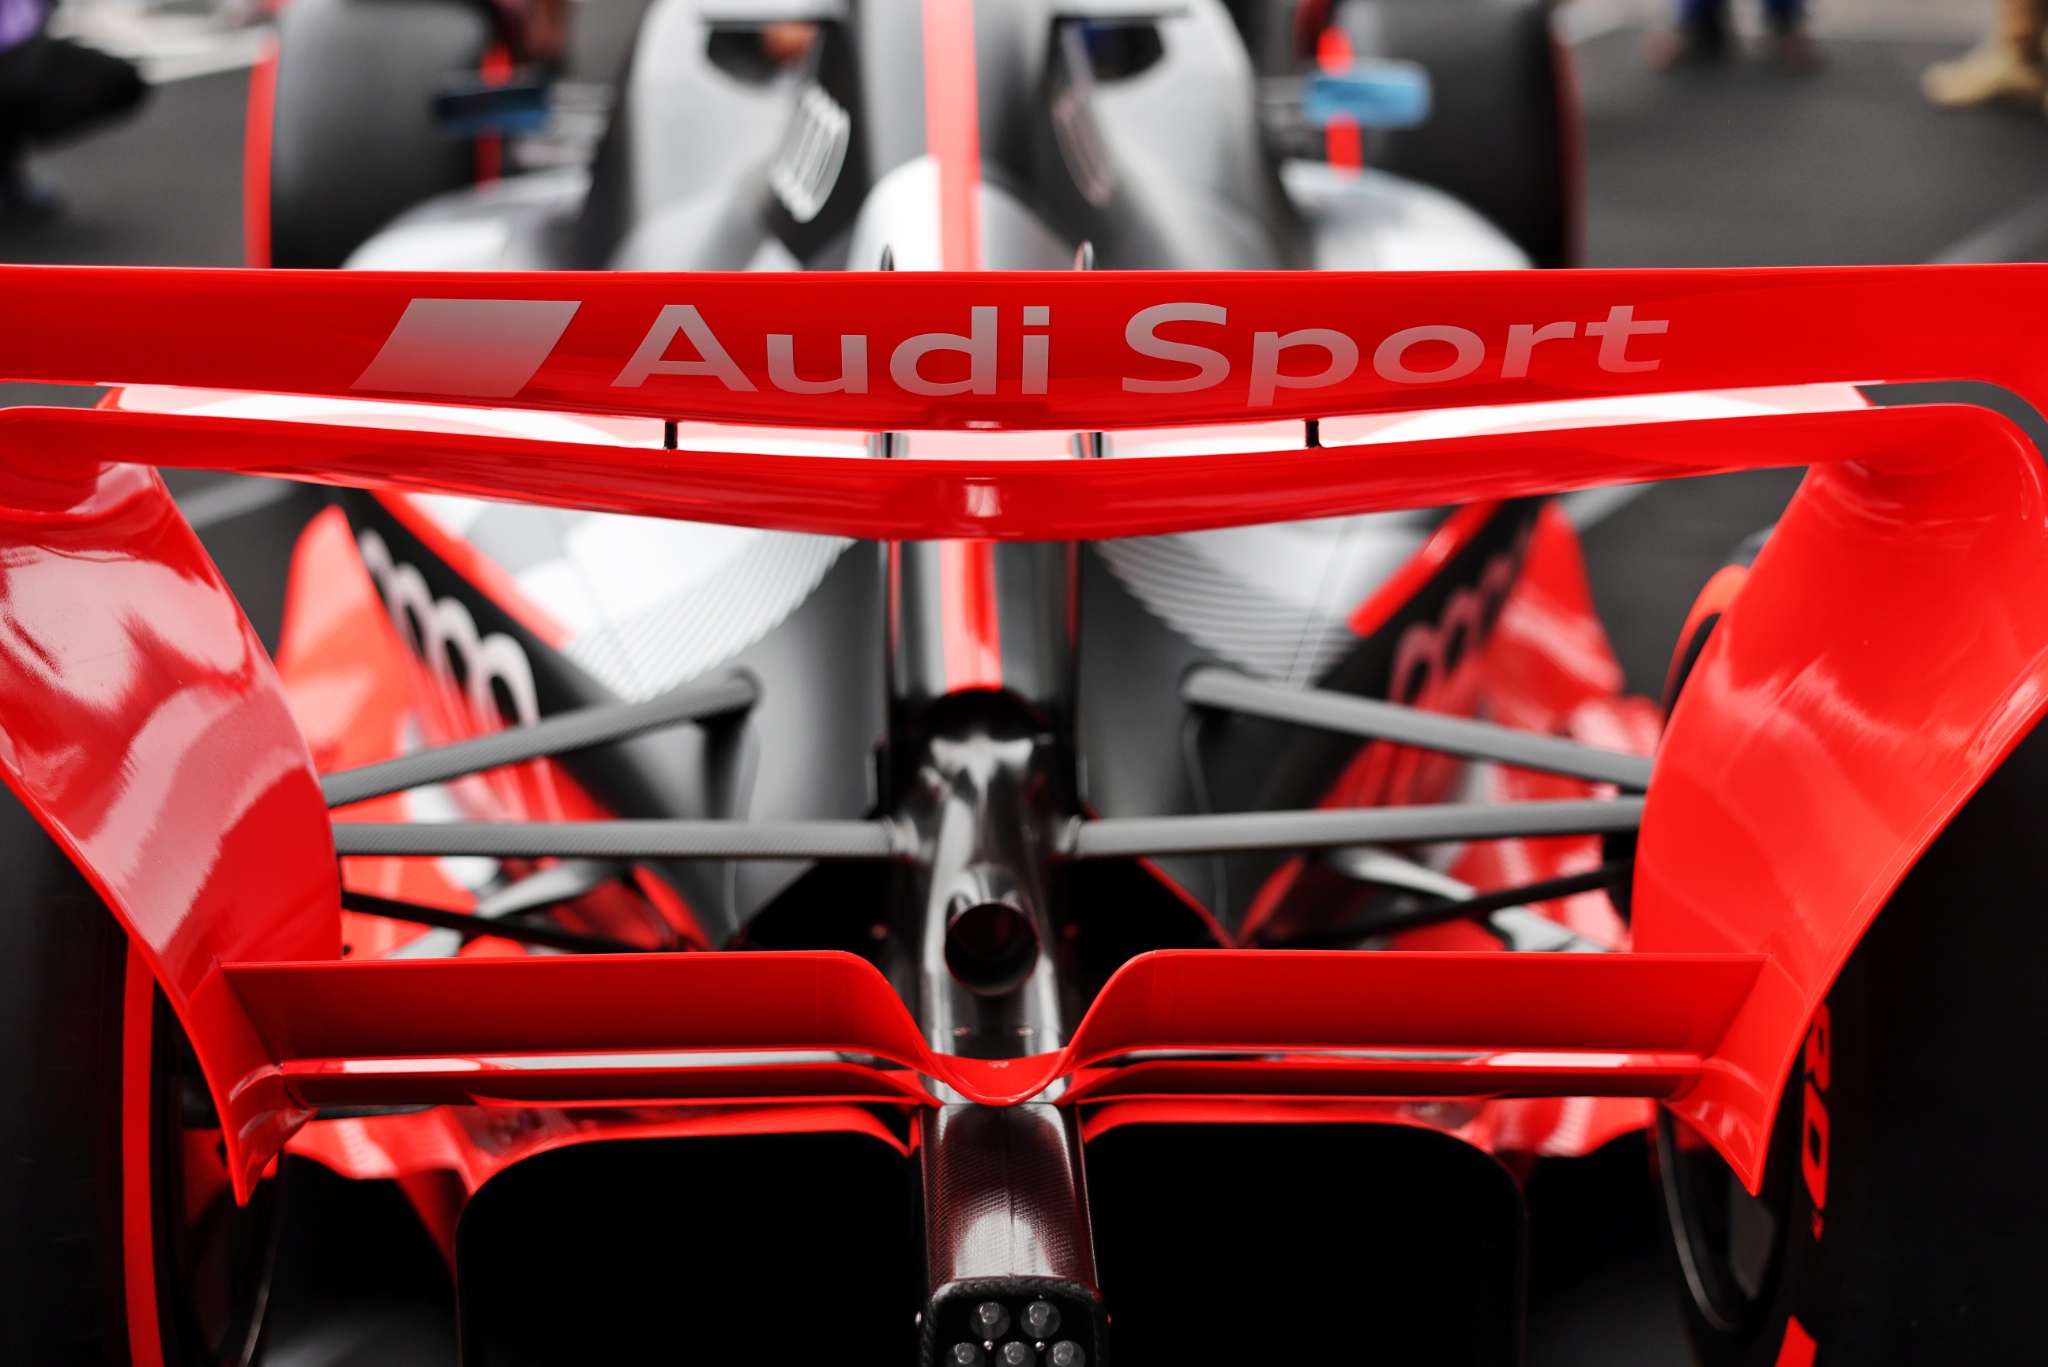 Mobil pamer di pit karena Audi telah resmi terdaftar sebagai produsen mesin F1 untuk peraturan 2026. Formula 1